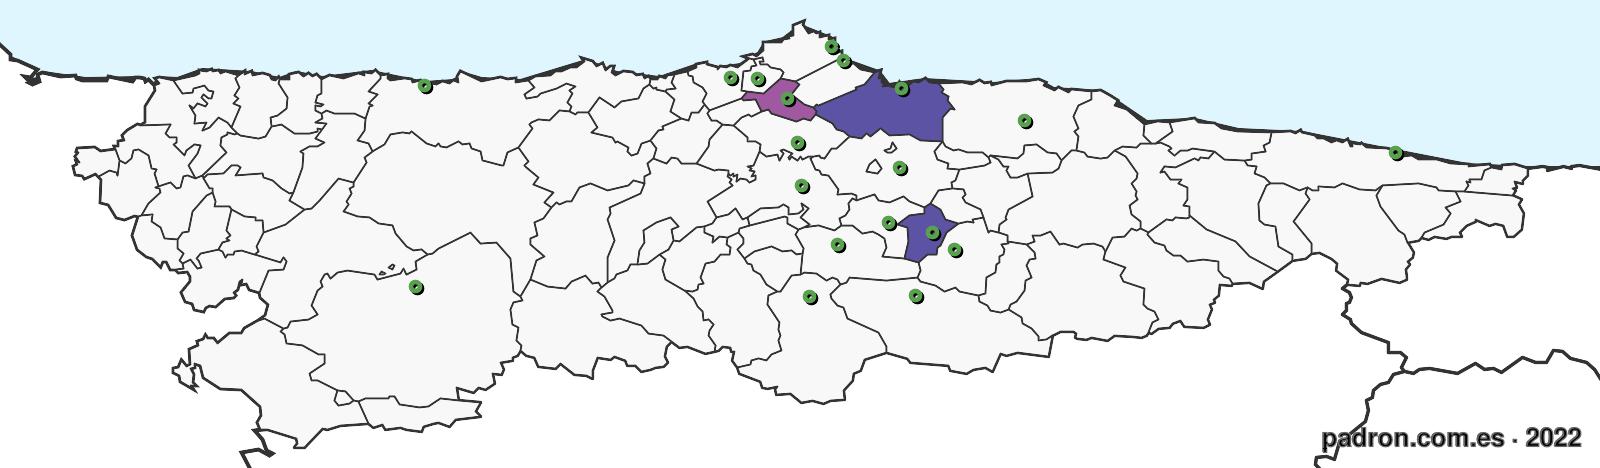 uzbekos en asturias.